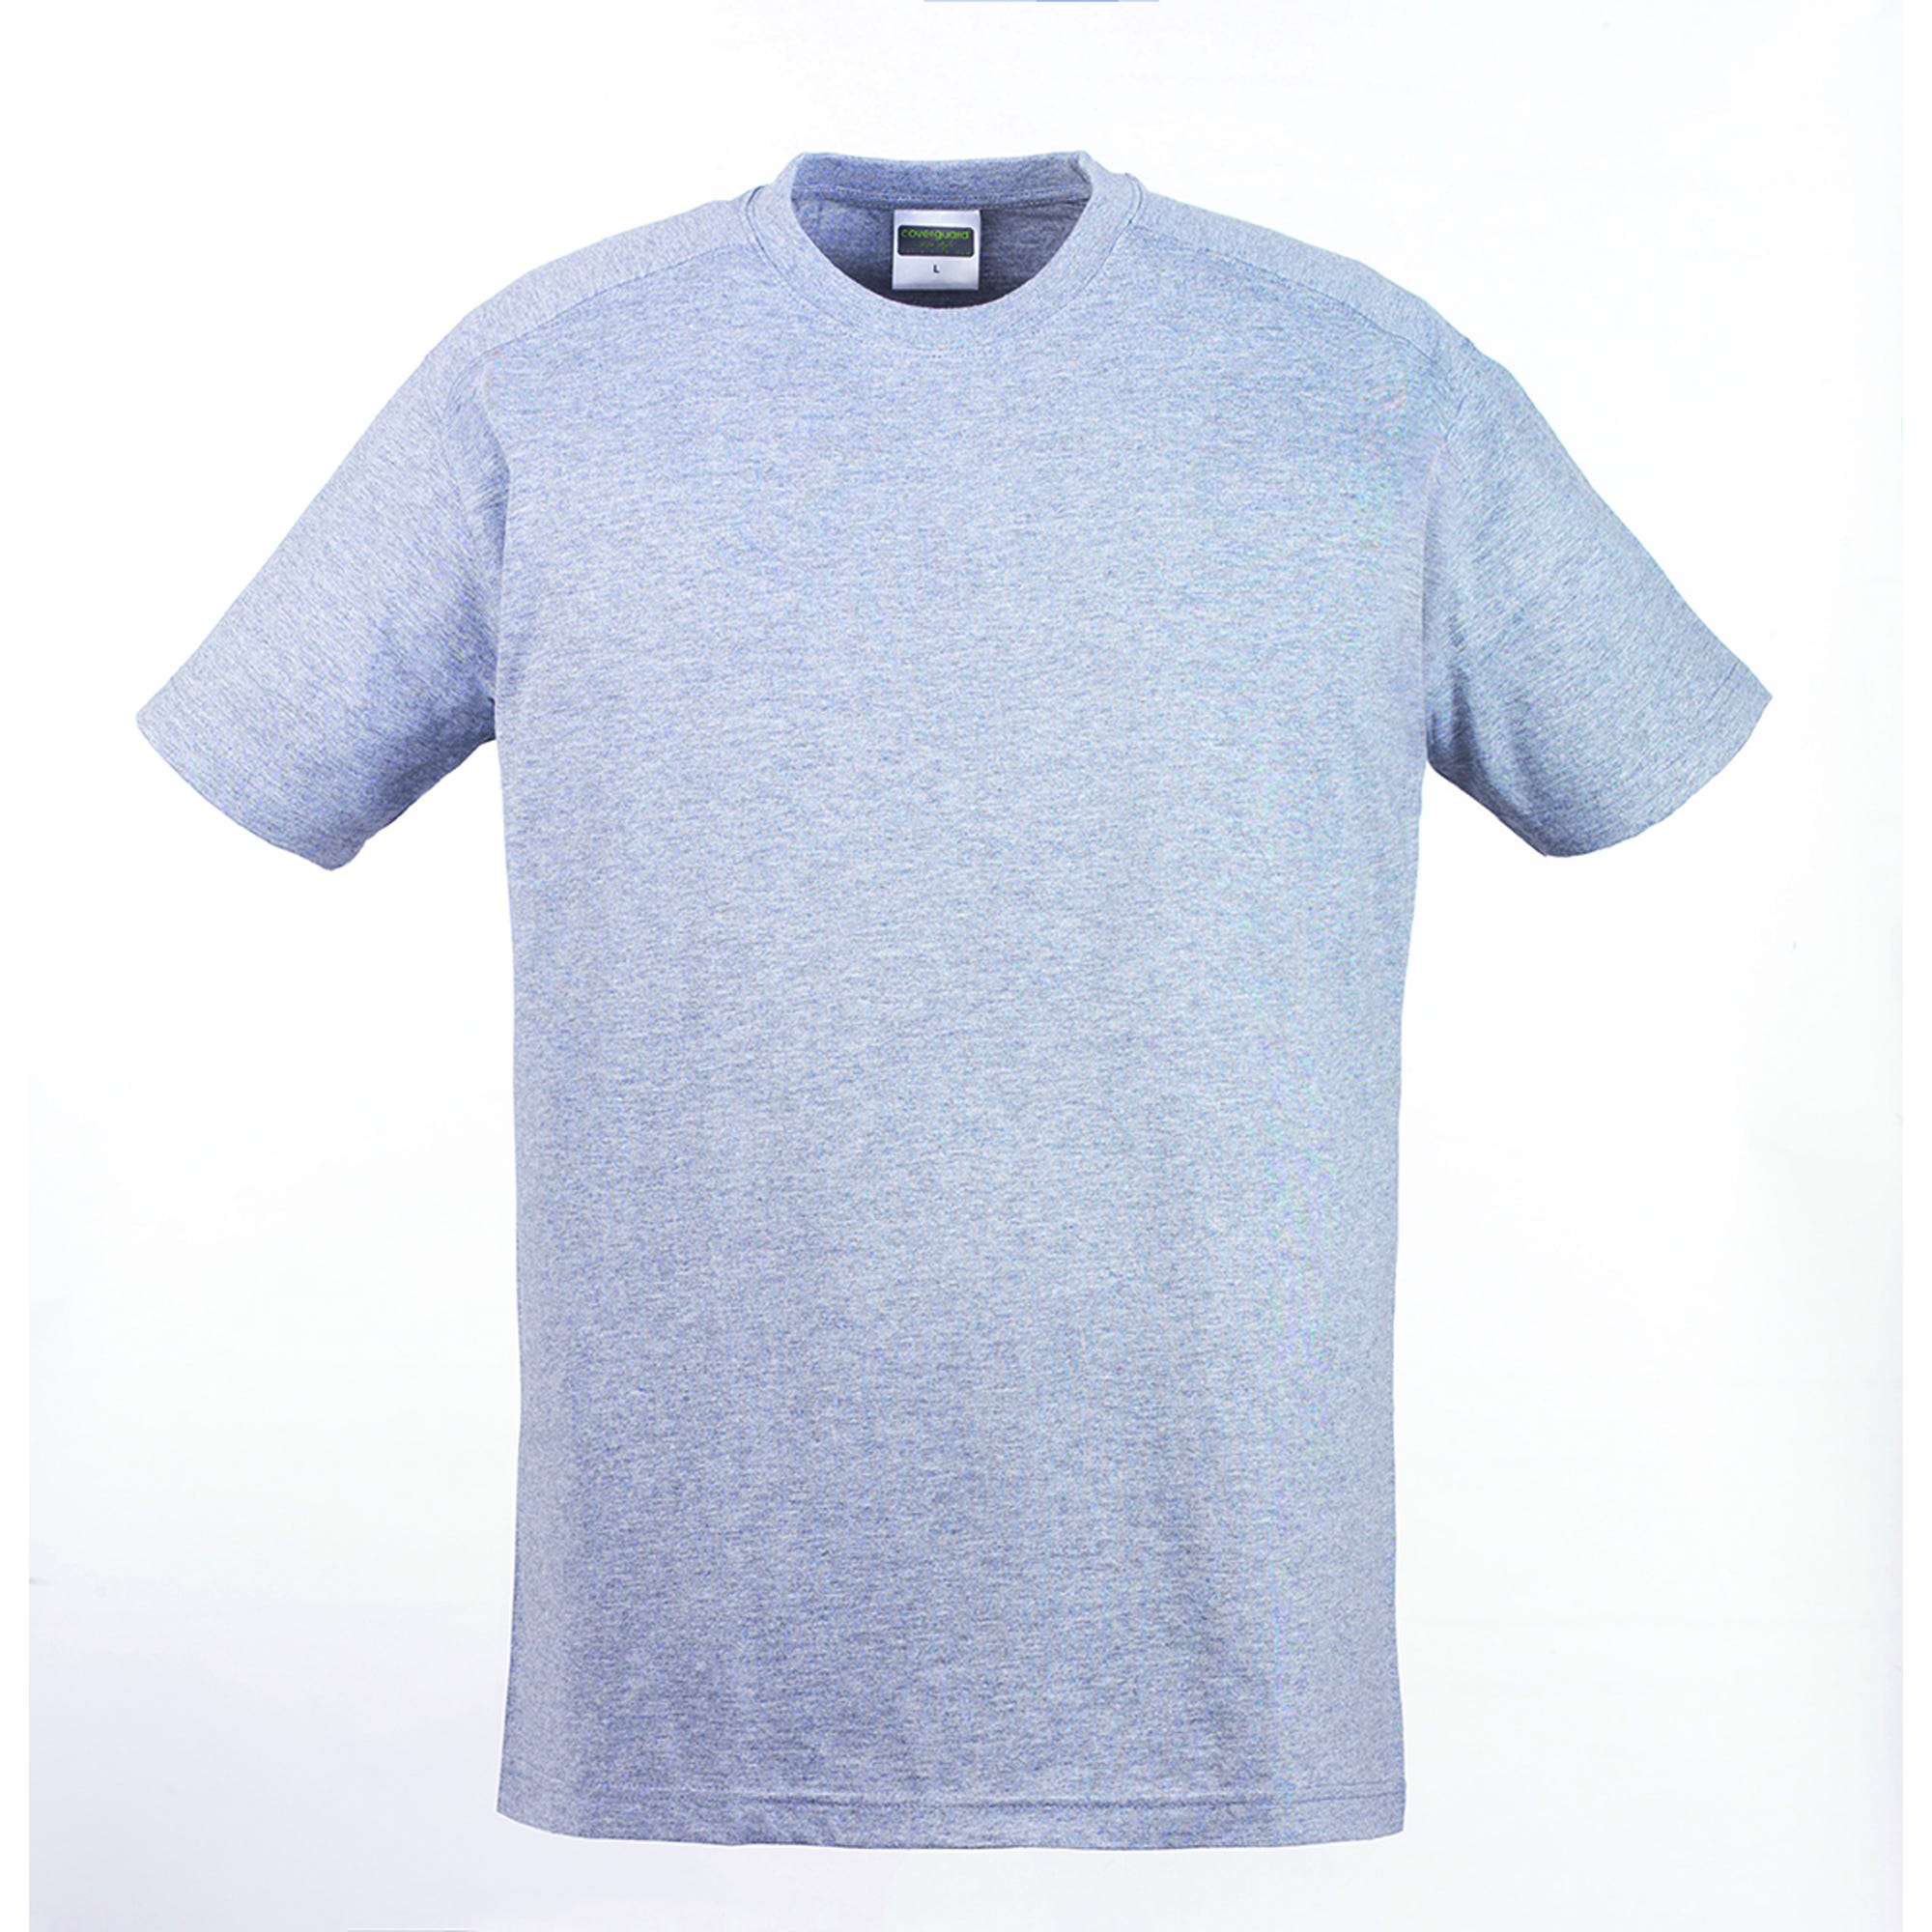 HIKE T-shirt MC gris chiné, 85% coton/15% viscose, 190g/m² - COVERGUARD - Taille 2XL 1